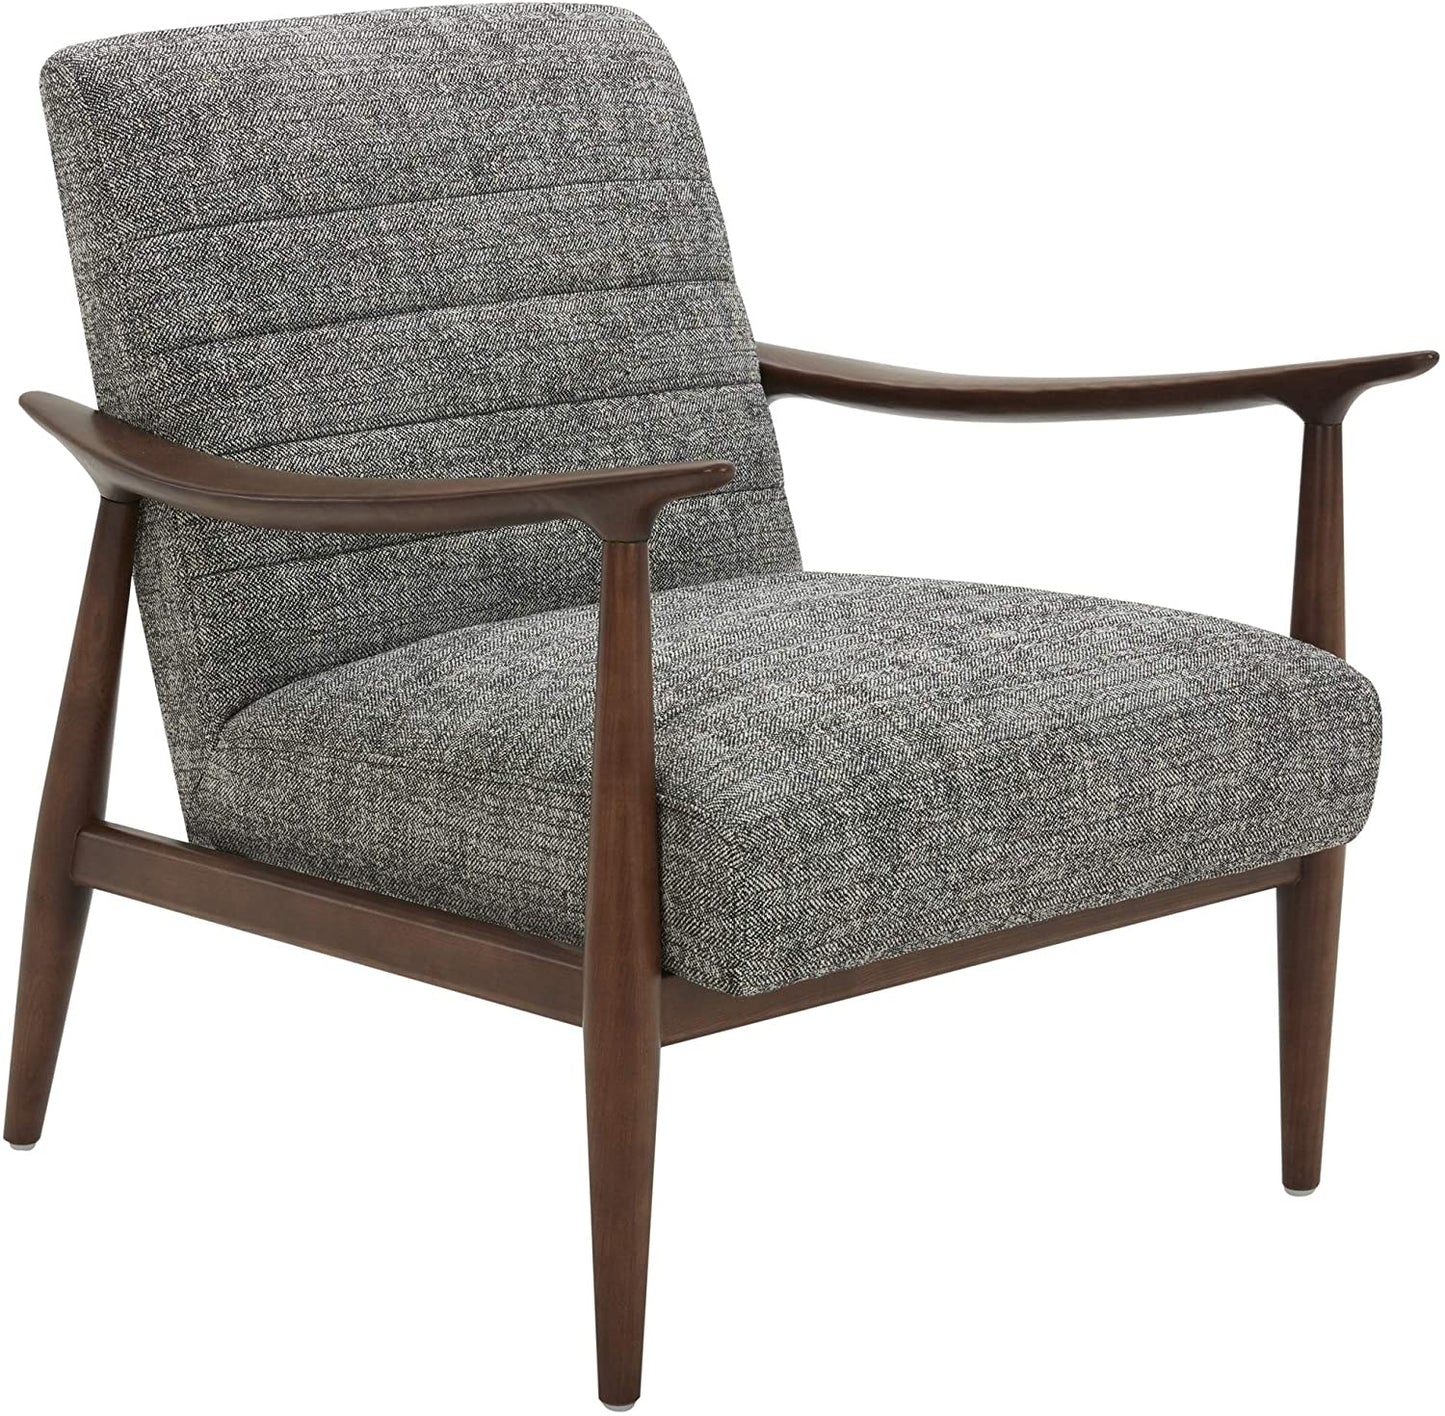 Sofa Chair: Wood Antique Chair Sofa